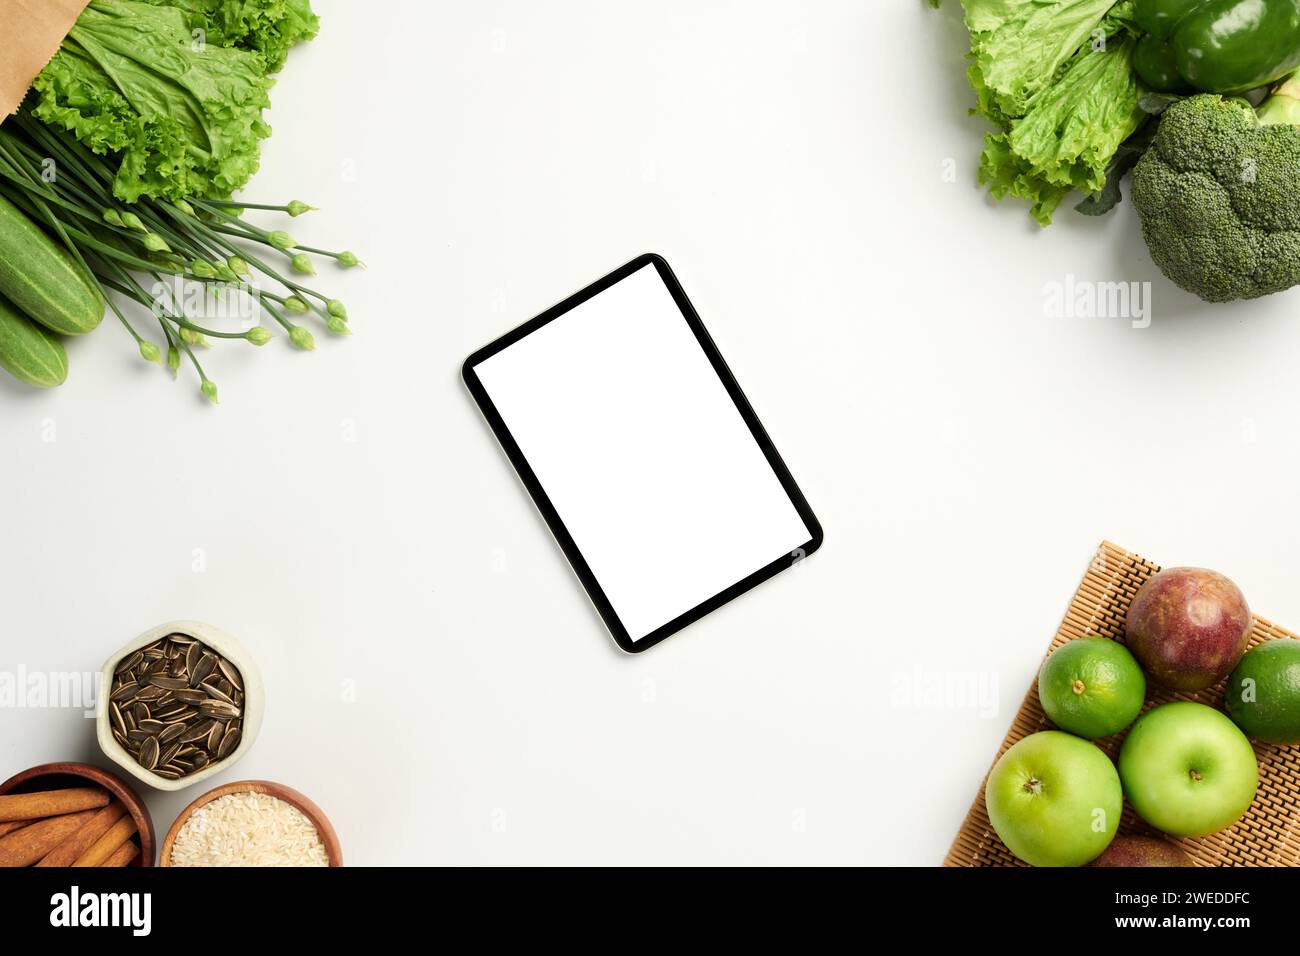 Tablette numérique avec écran blanc sur table avec fruits et légumes frais Banque D'Images